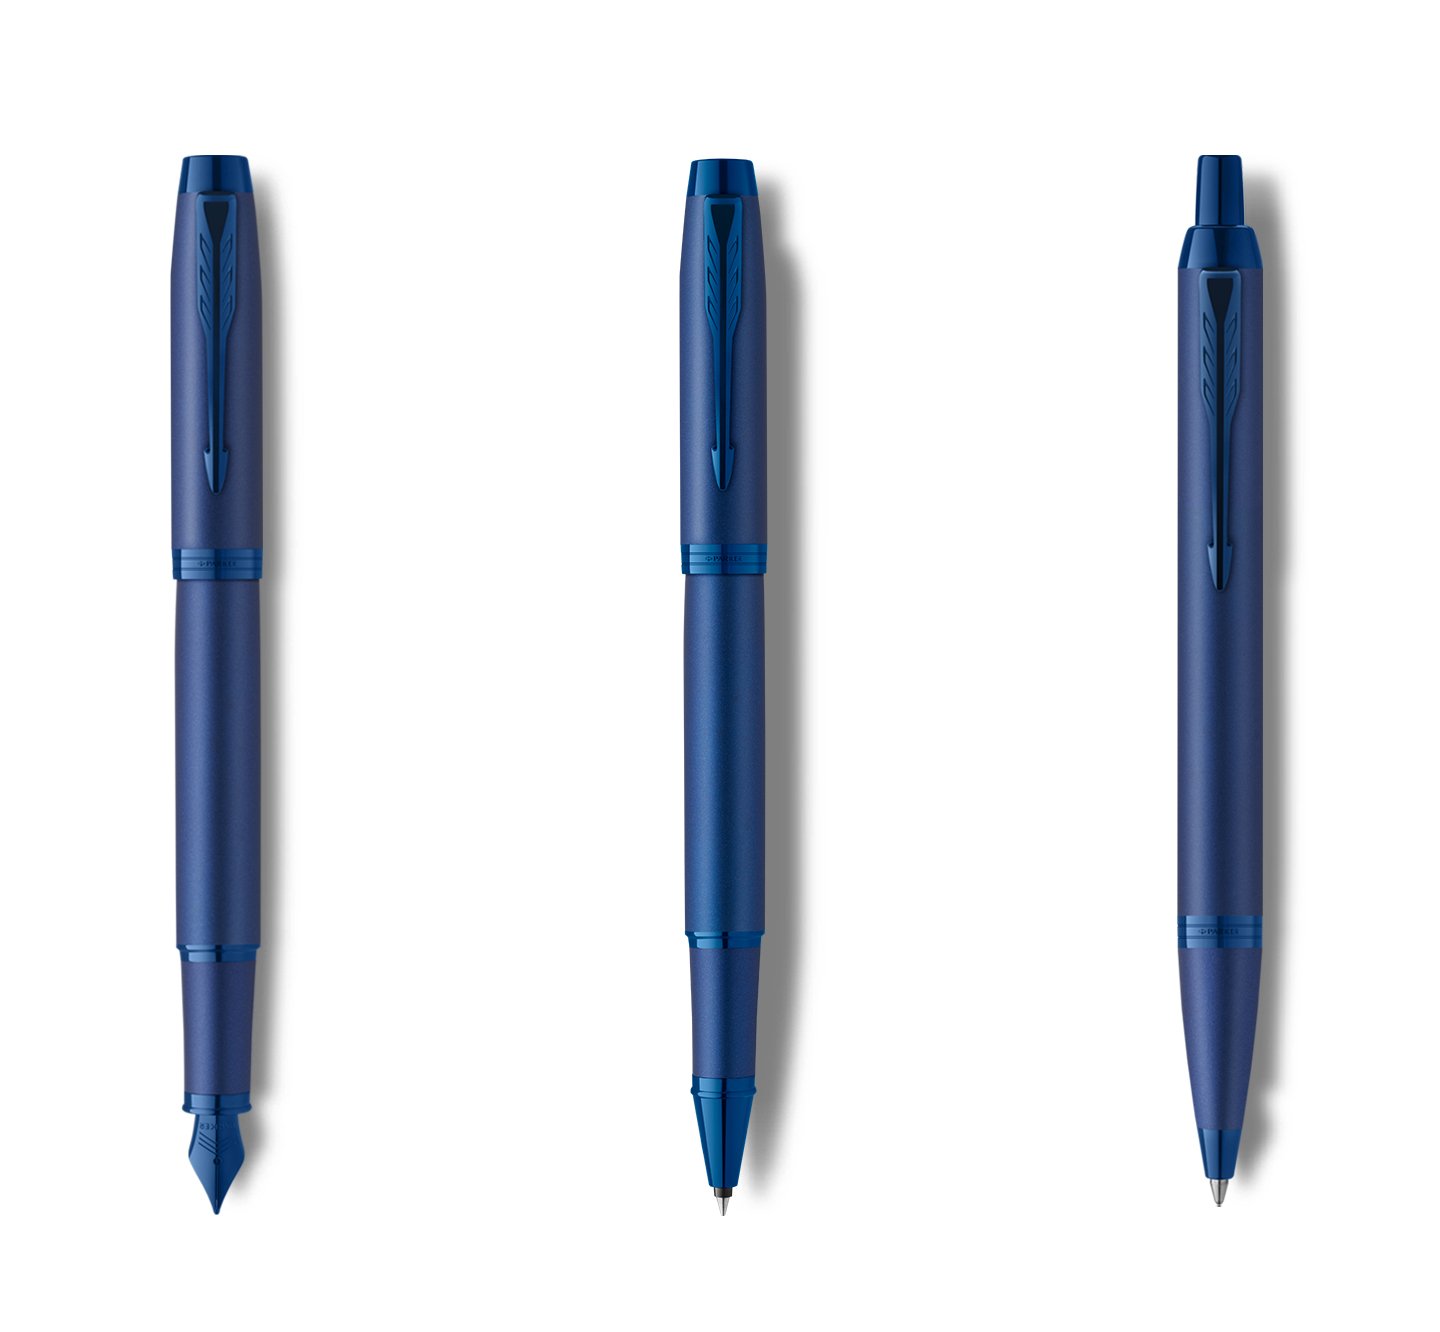 monochrome pen collection